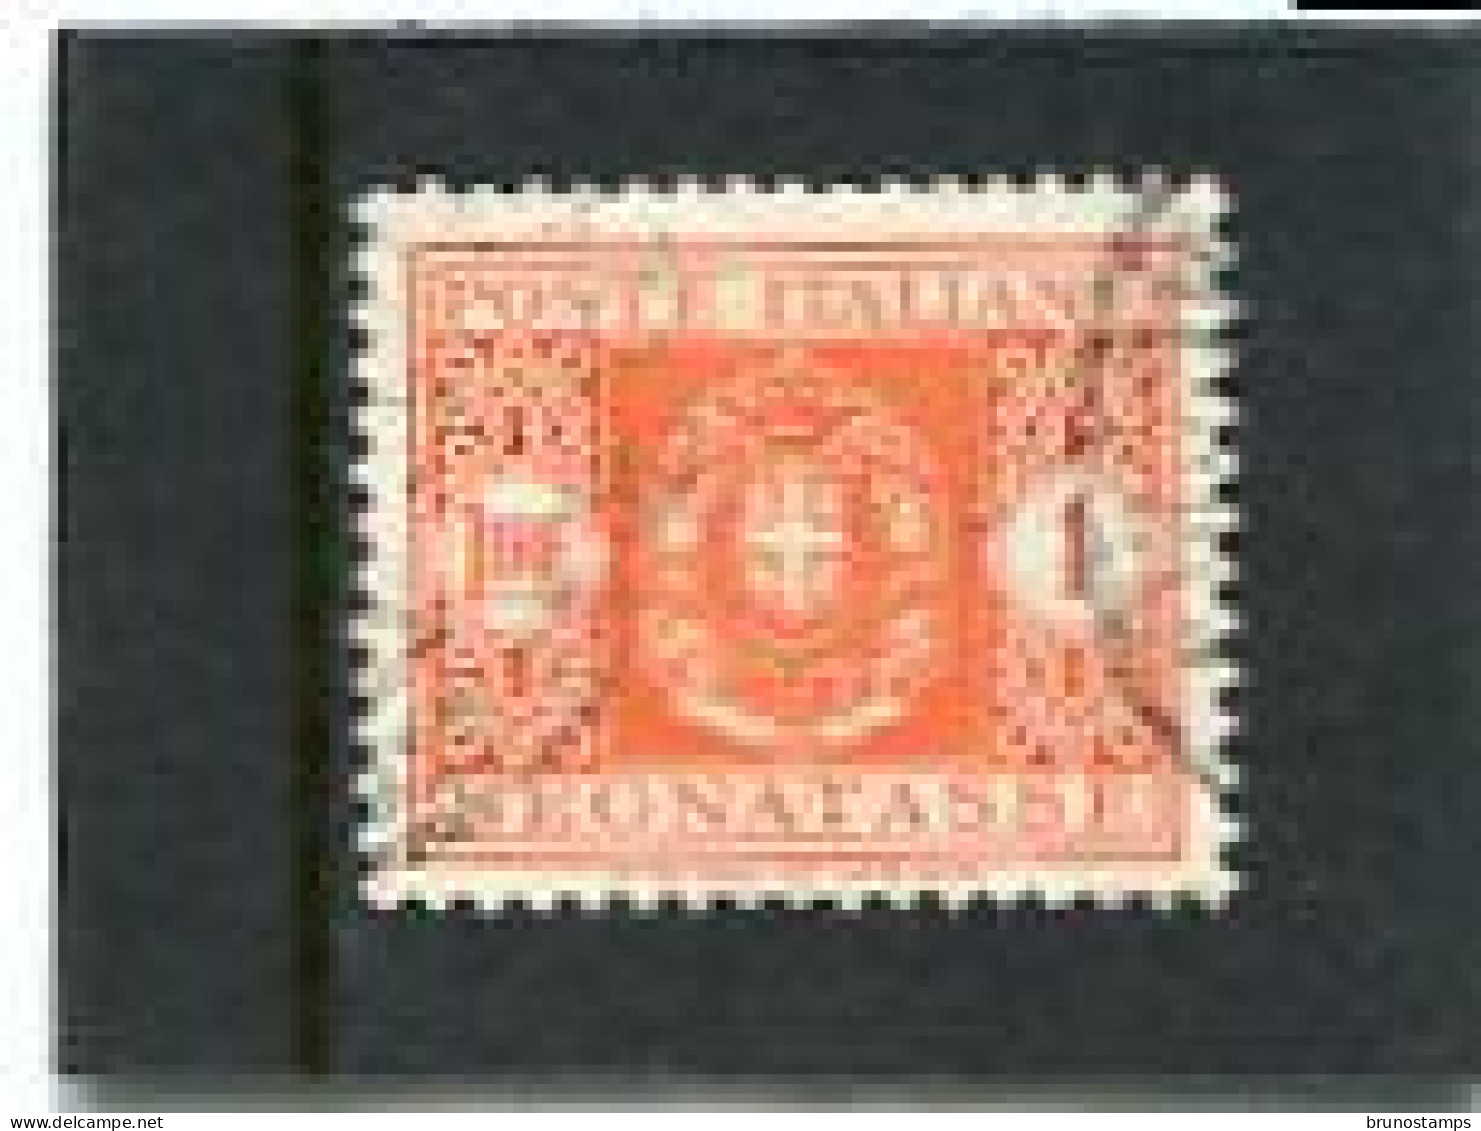 ITALY/ITALIA - 1934  POSTAGE DUE  1 L  FINE USED - Portomarken